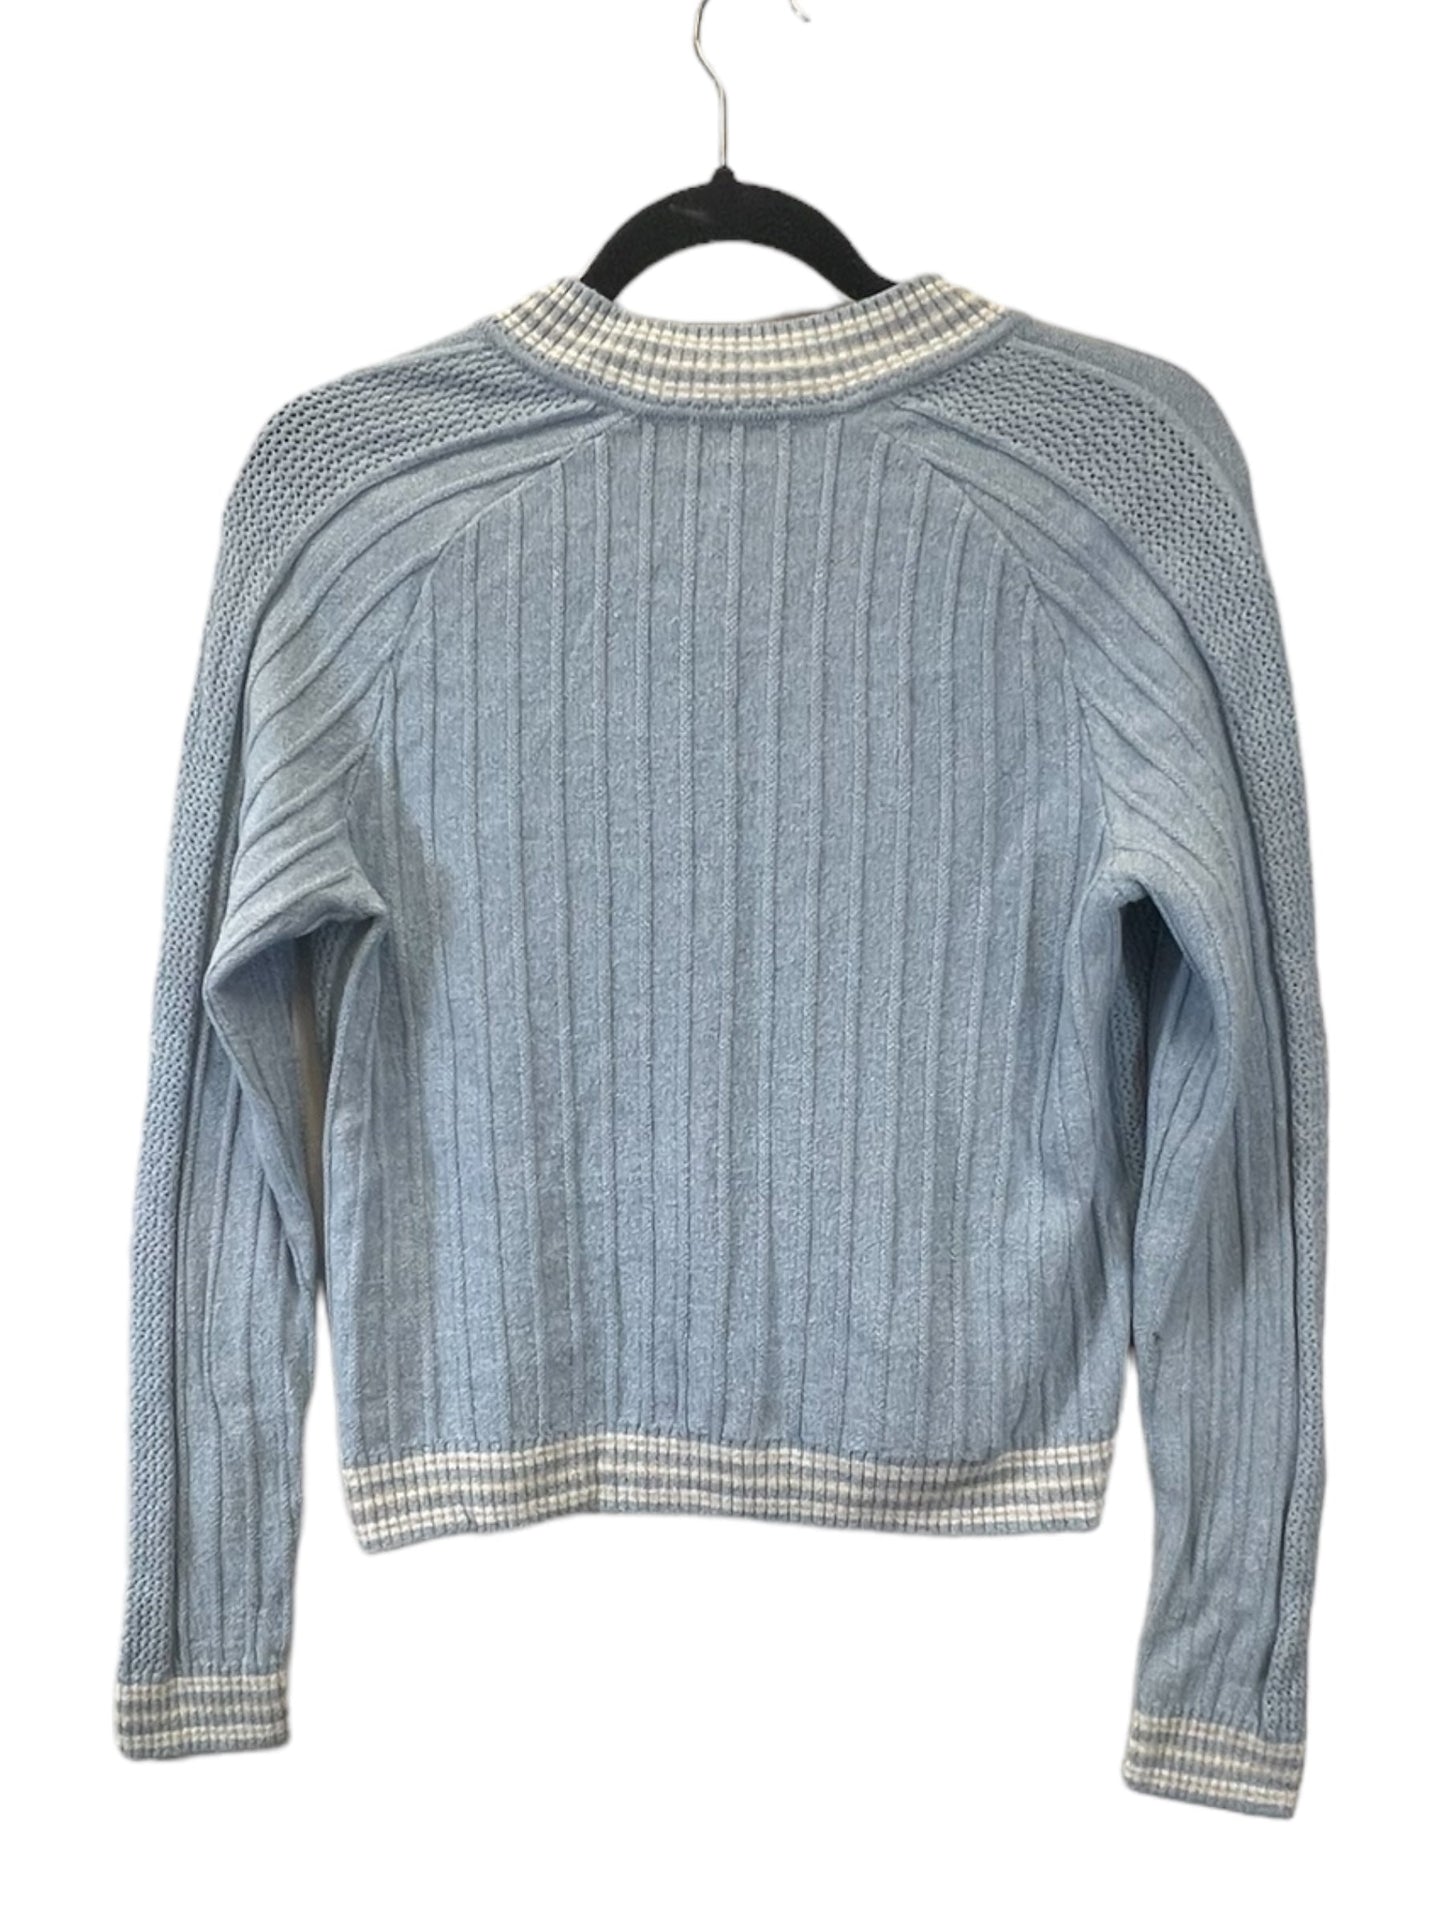 Blue & White Sweater Designer St. John, Size S